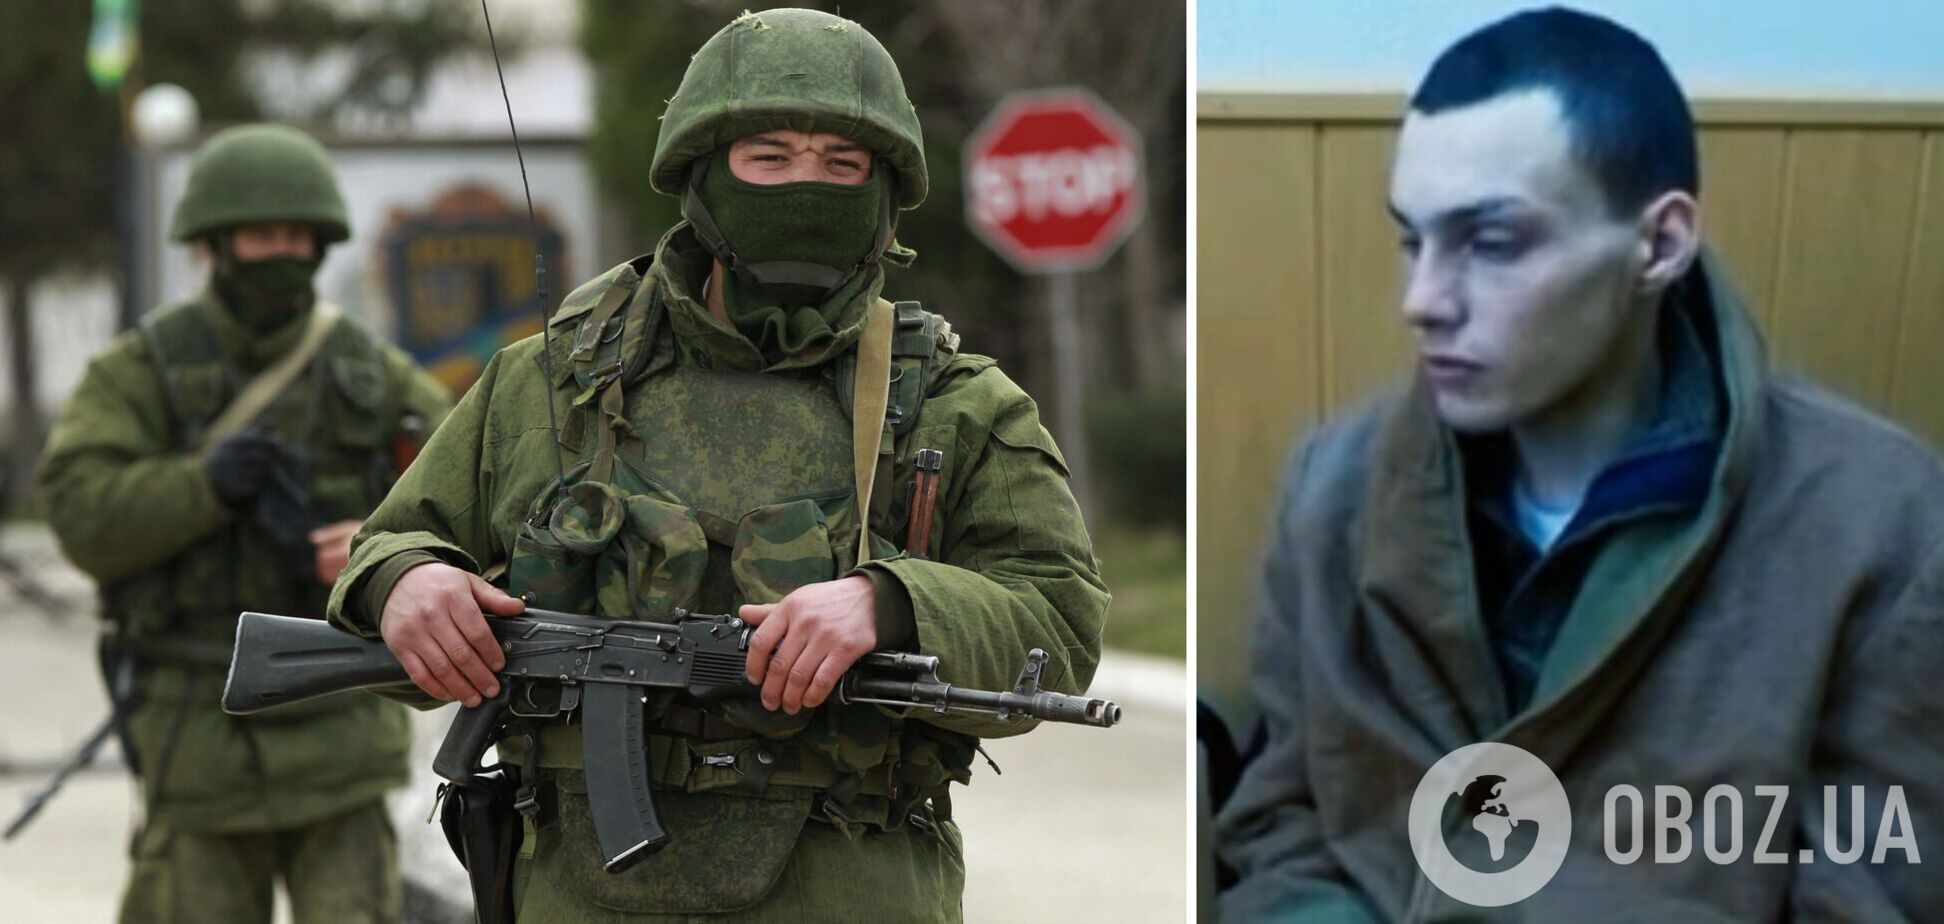 Пленный оккупант рассказал, как им приказали 'спасти' украинцев в Харькове. Видео допроса